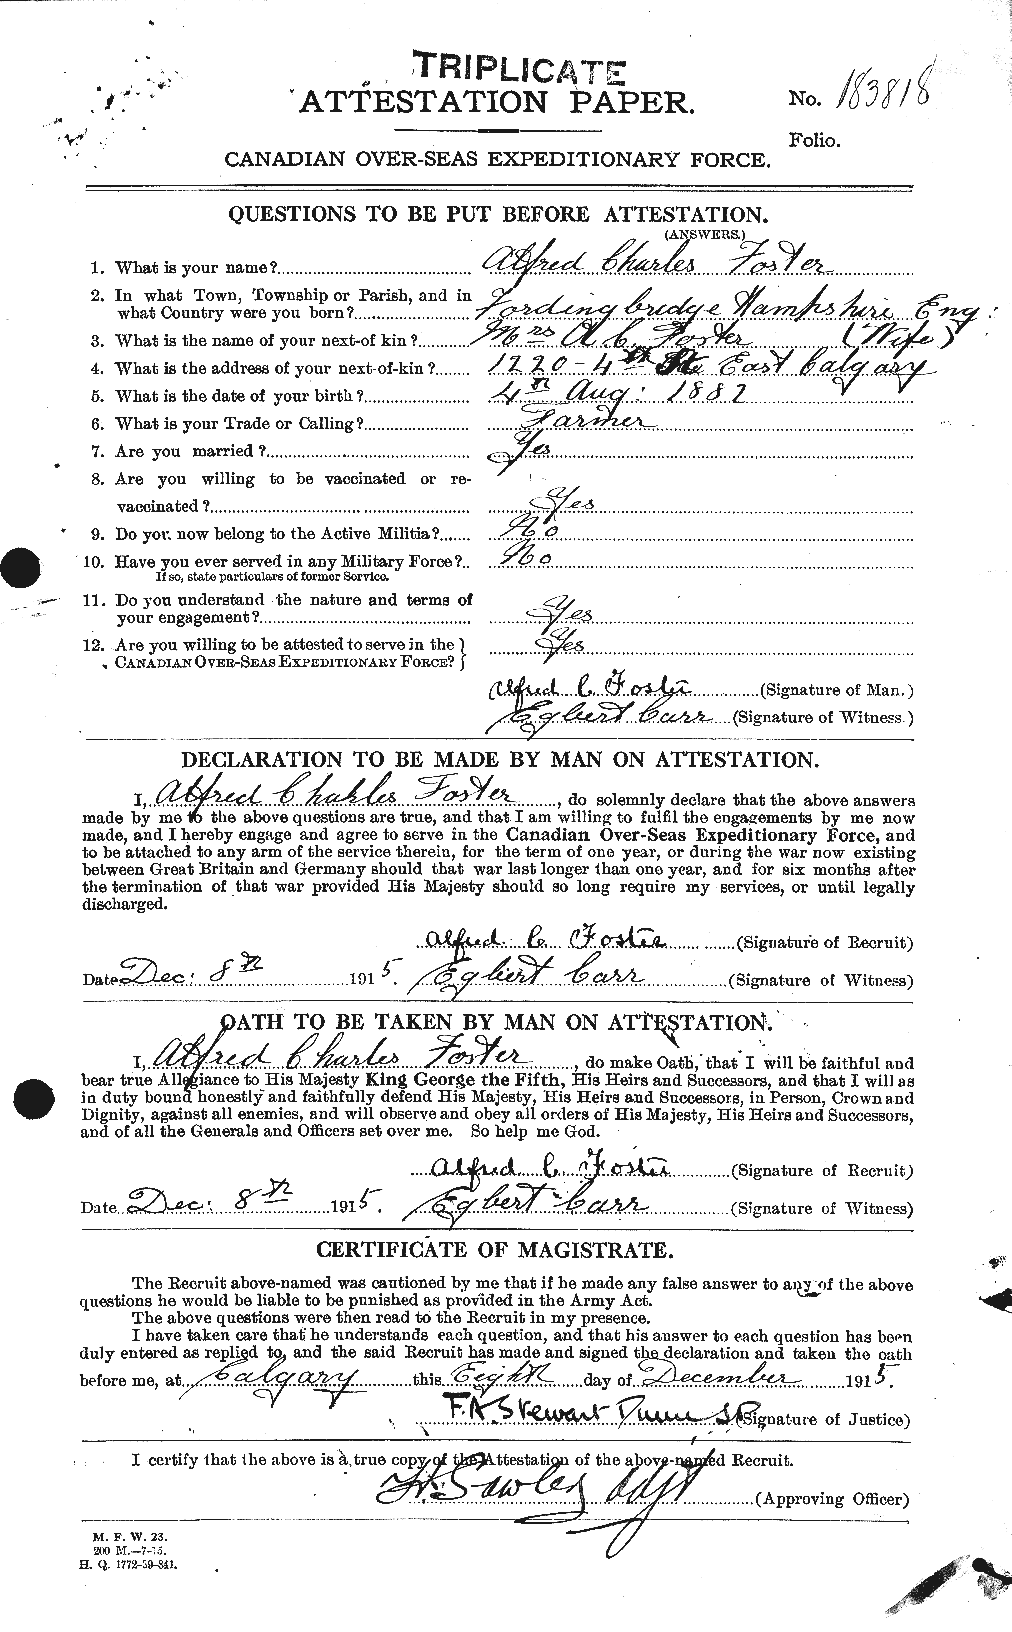 Dossiers du Personnel de la Première Guerre mondiale - CEC 330446a